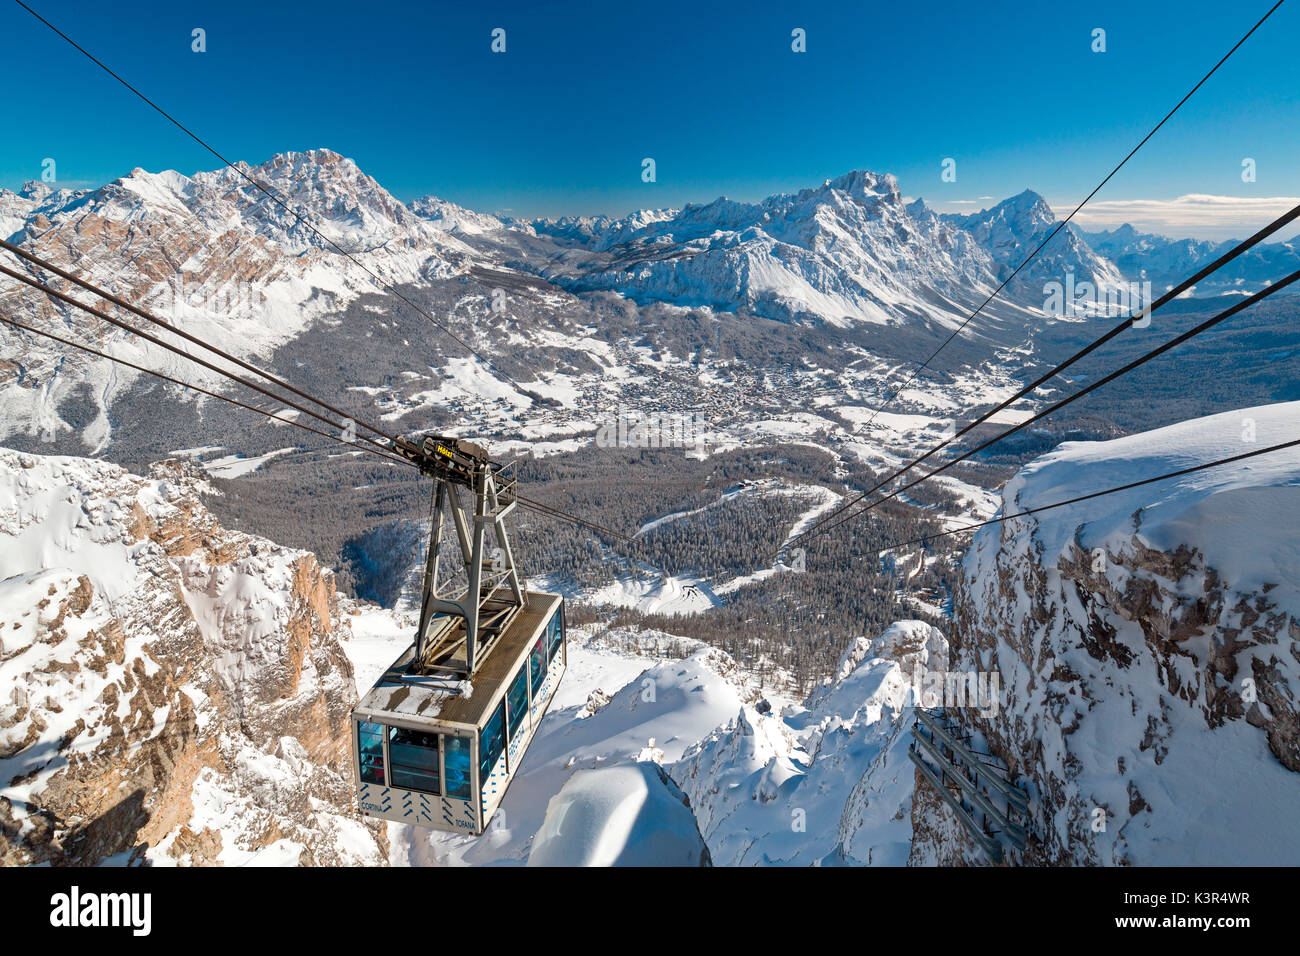 Freccia nel Cielo cableway. Cortina d'Ampezzo, Veneto, Italy. Stock Photo